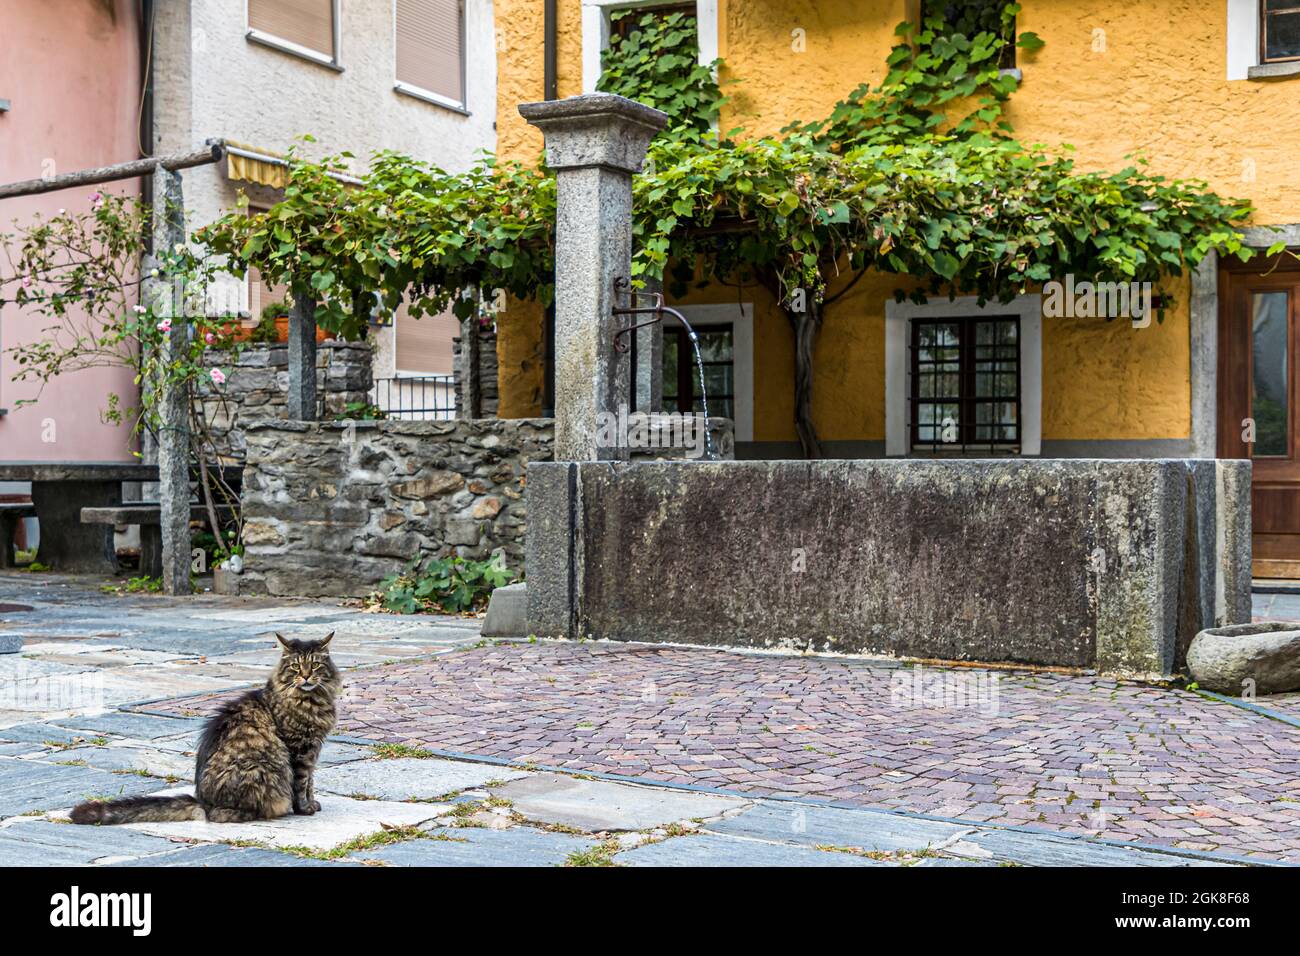 Katze vor einem Dorfbrunnen in Moghegno, Circolo della Maggia, Schweiz  Stockfotografie - Alamy